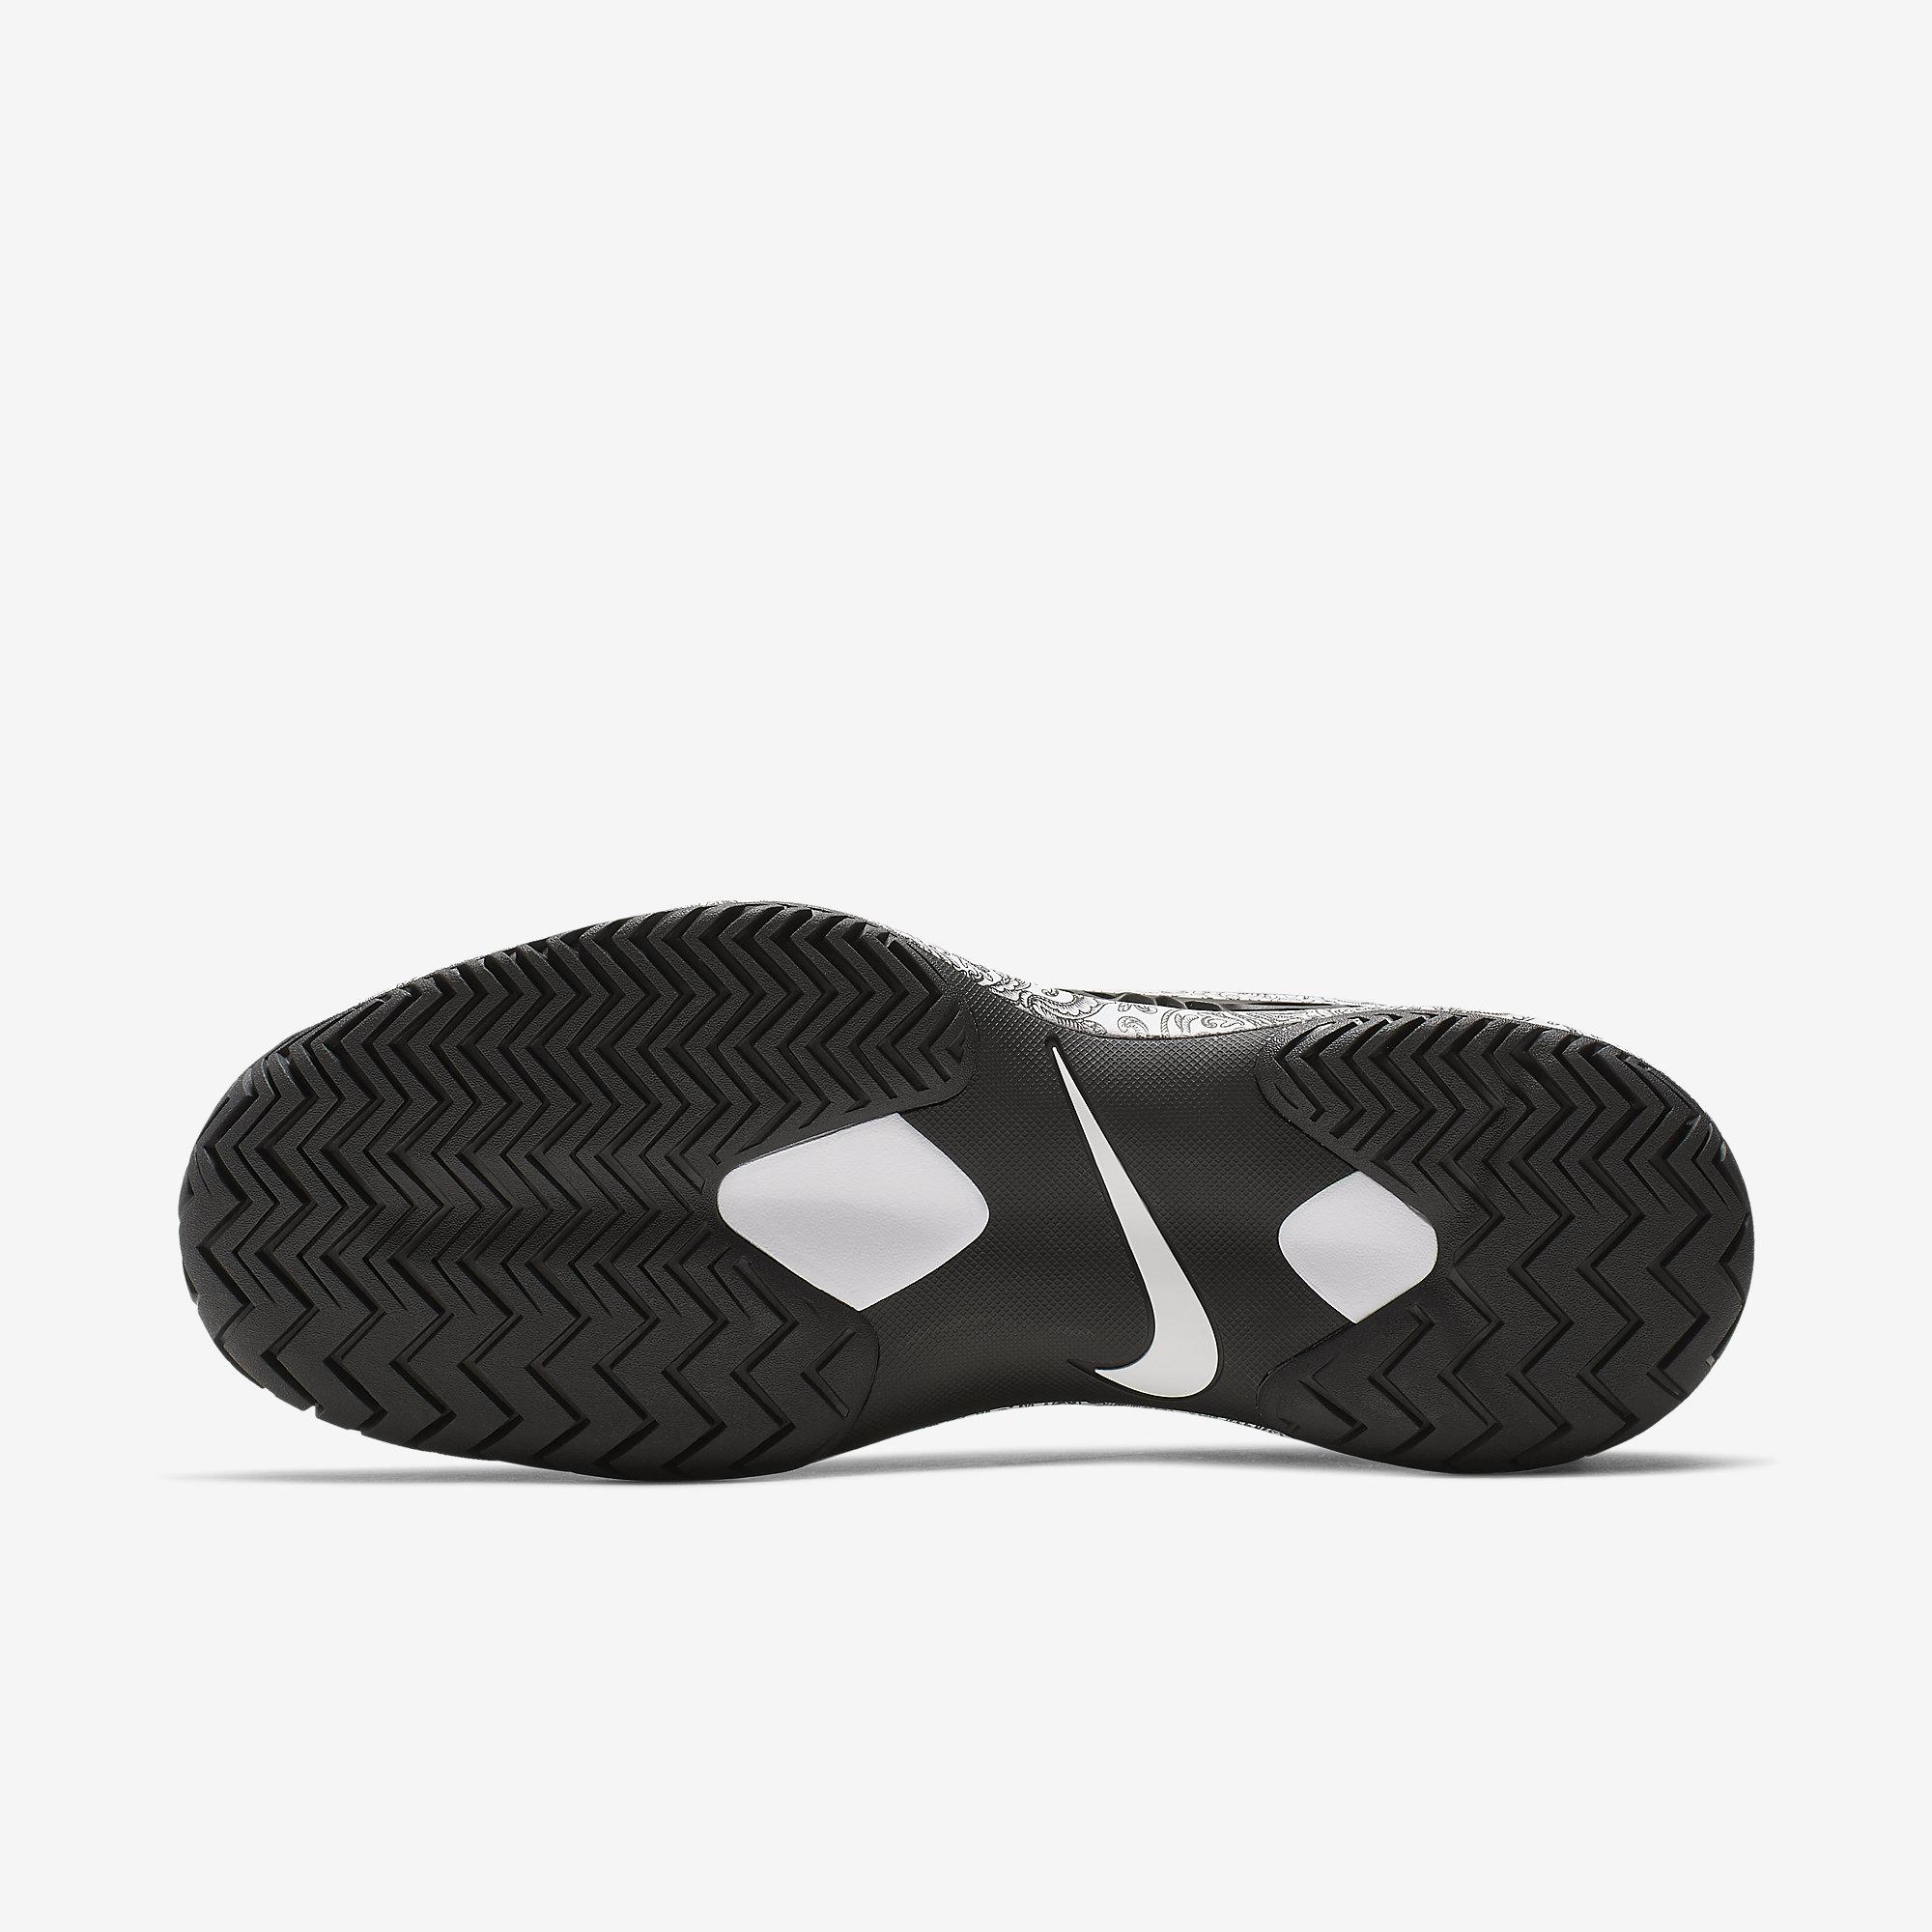 Nike Mens Zoom Cage 3 Tennis Shoes - Black/White - Tennisnuts.com